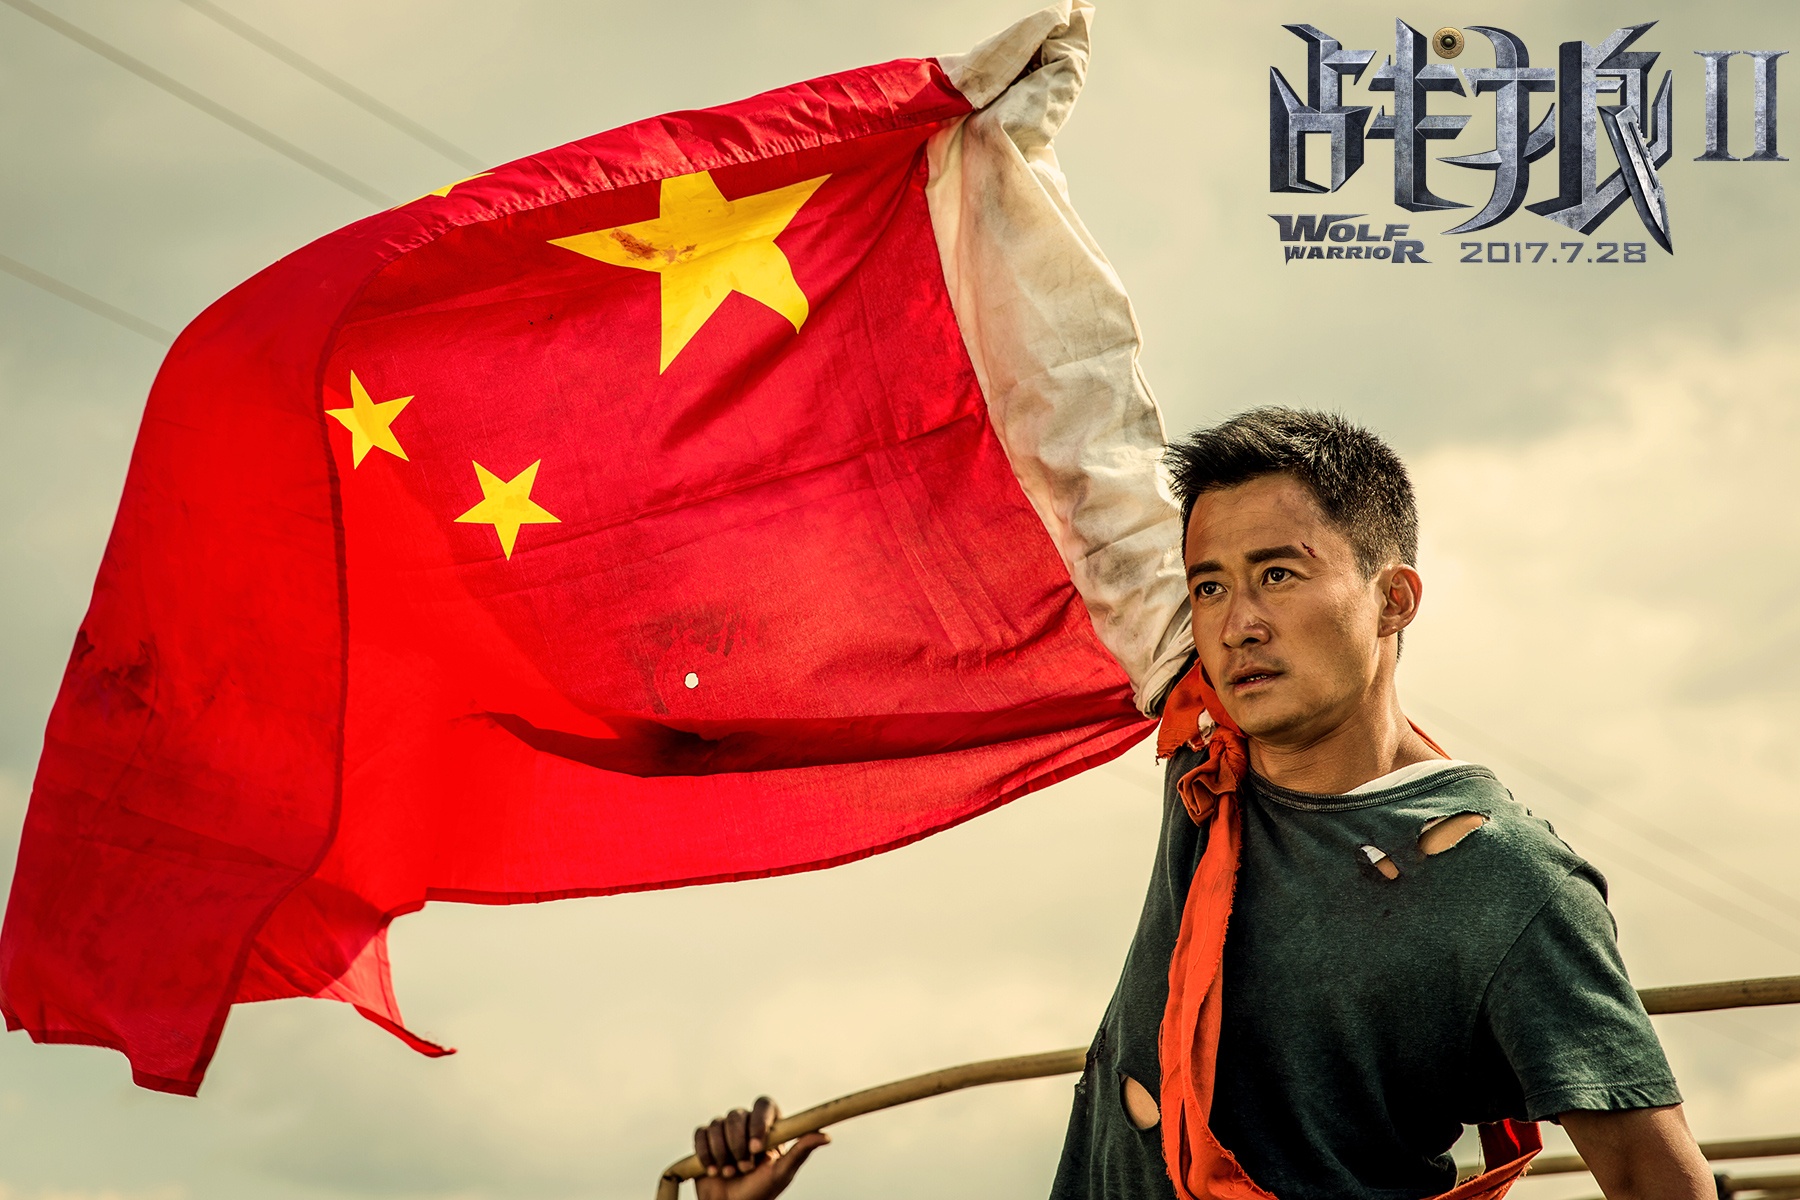 2017年中国电影总票房559.11亿元 同比增长1